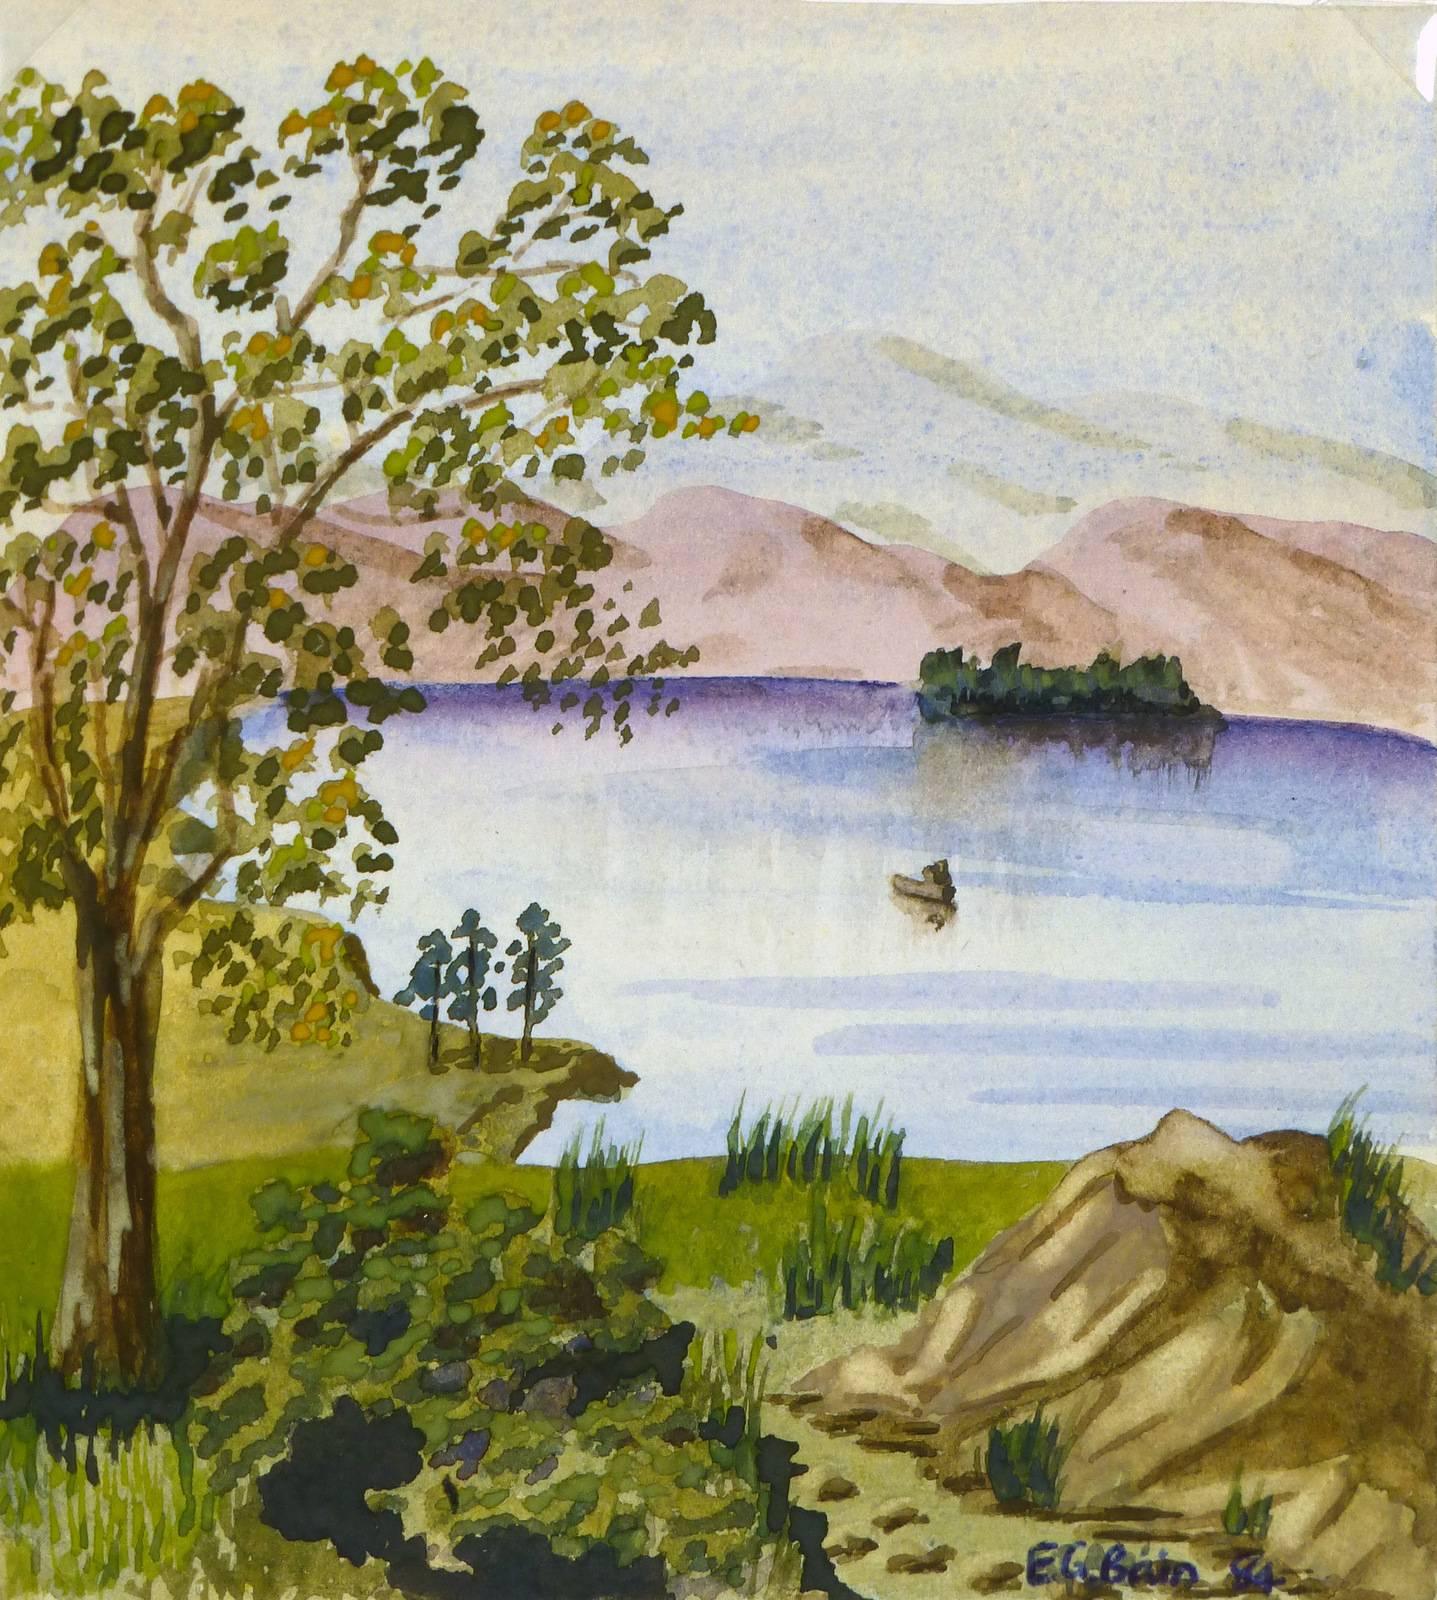 E.G. Bain Landscape Art - Countryside Lake